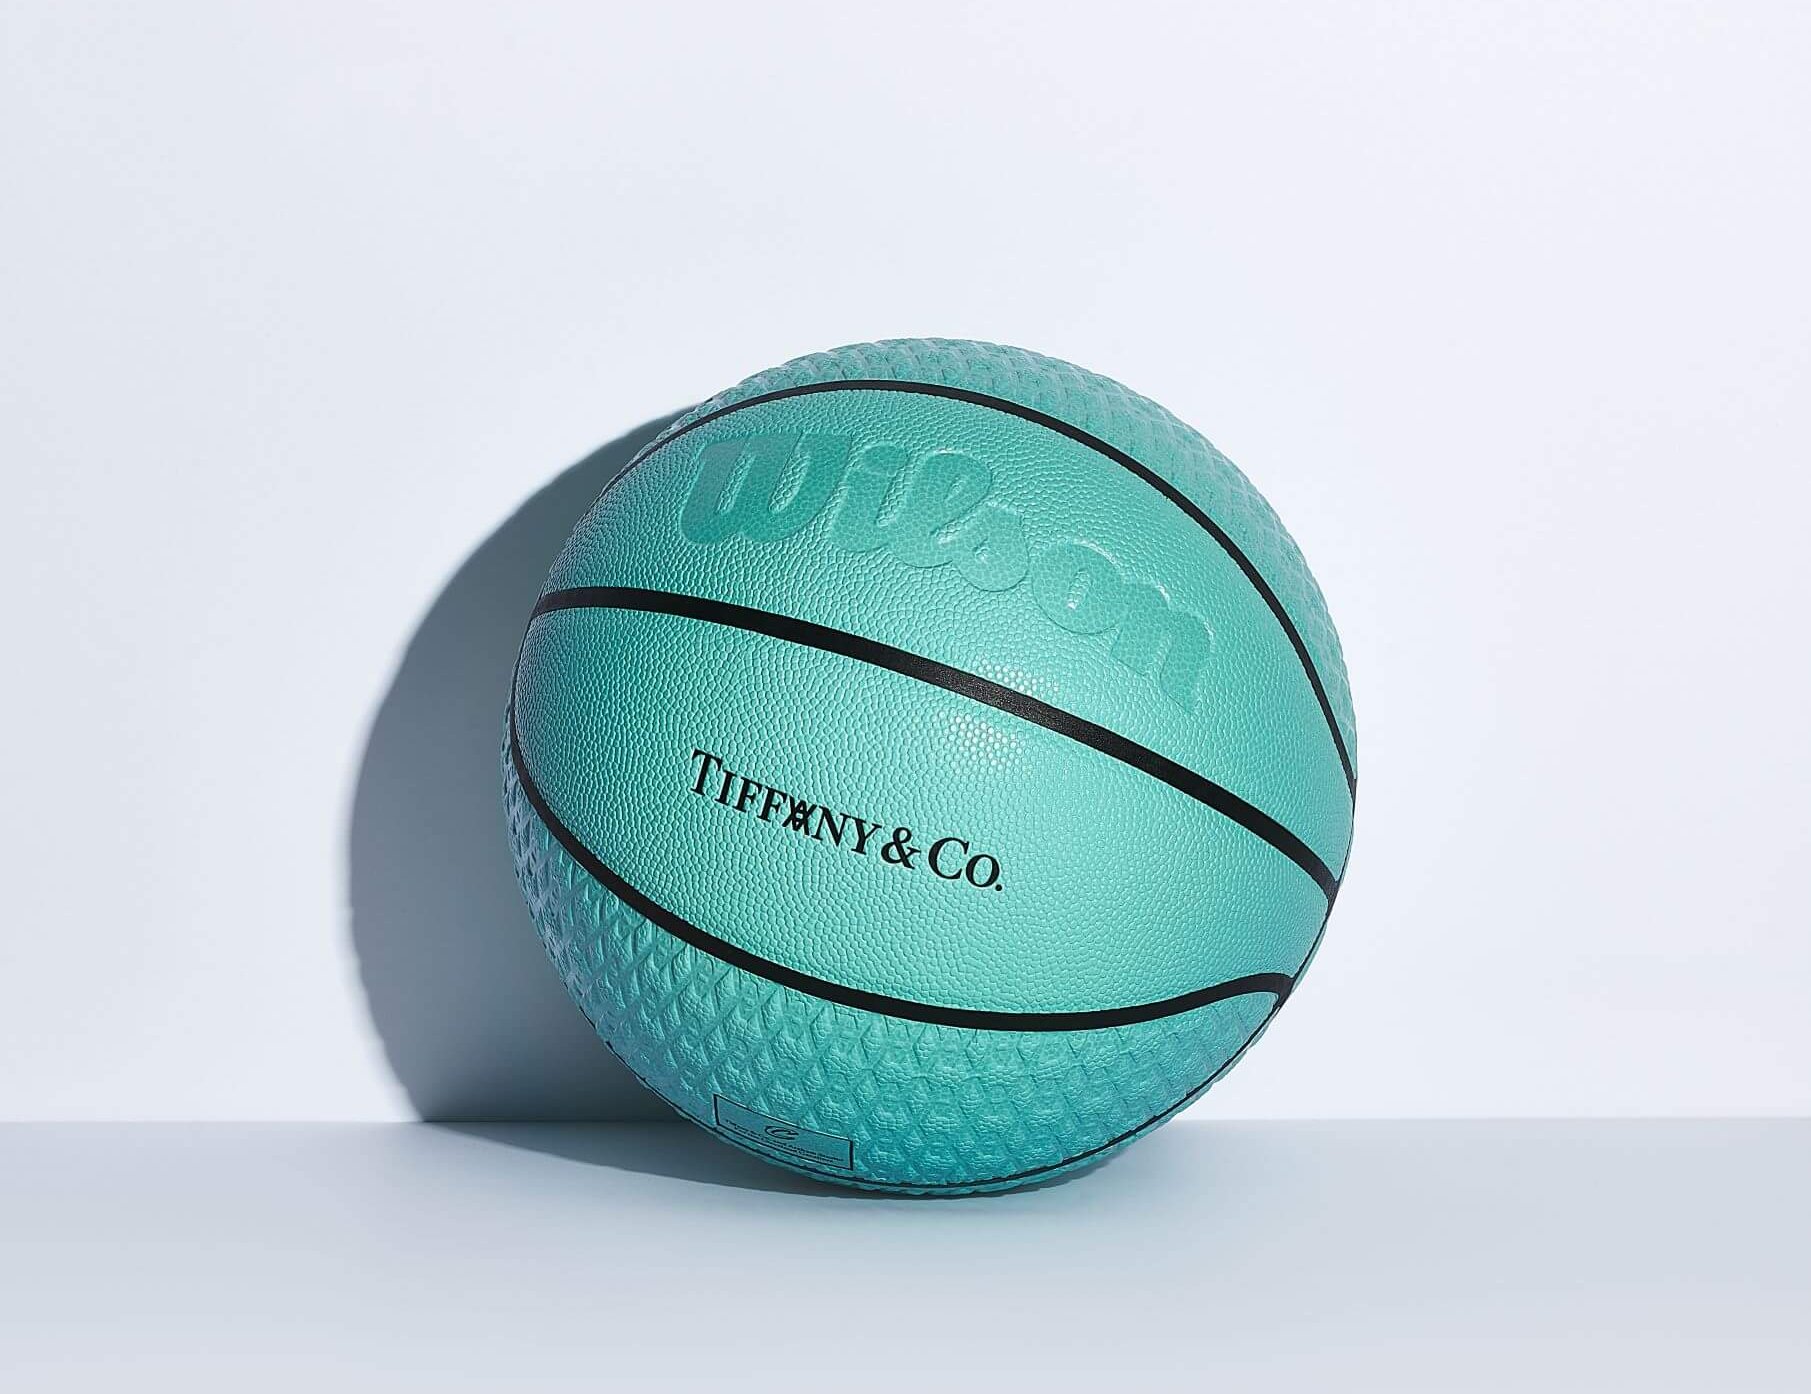 ティファニーバスケットボール 7号 新品 未使用 - ボール